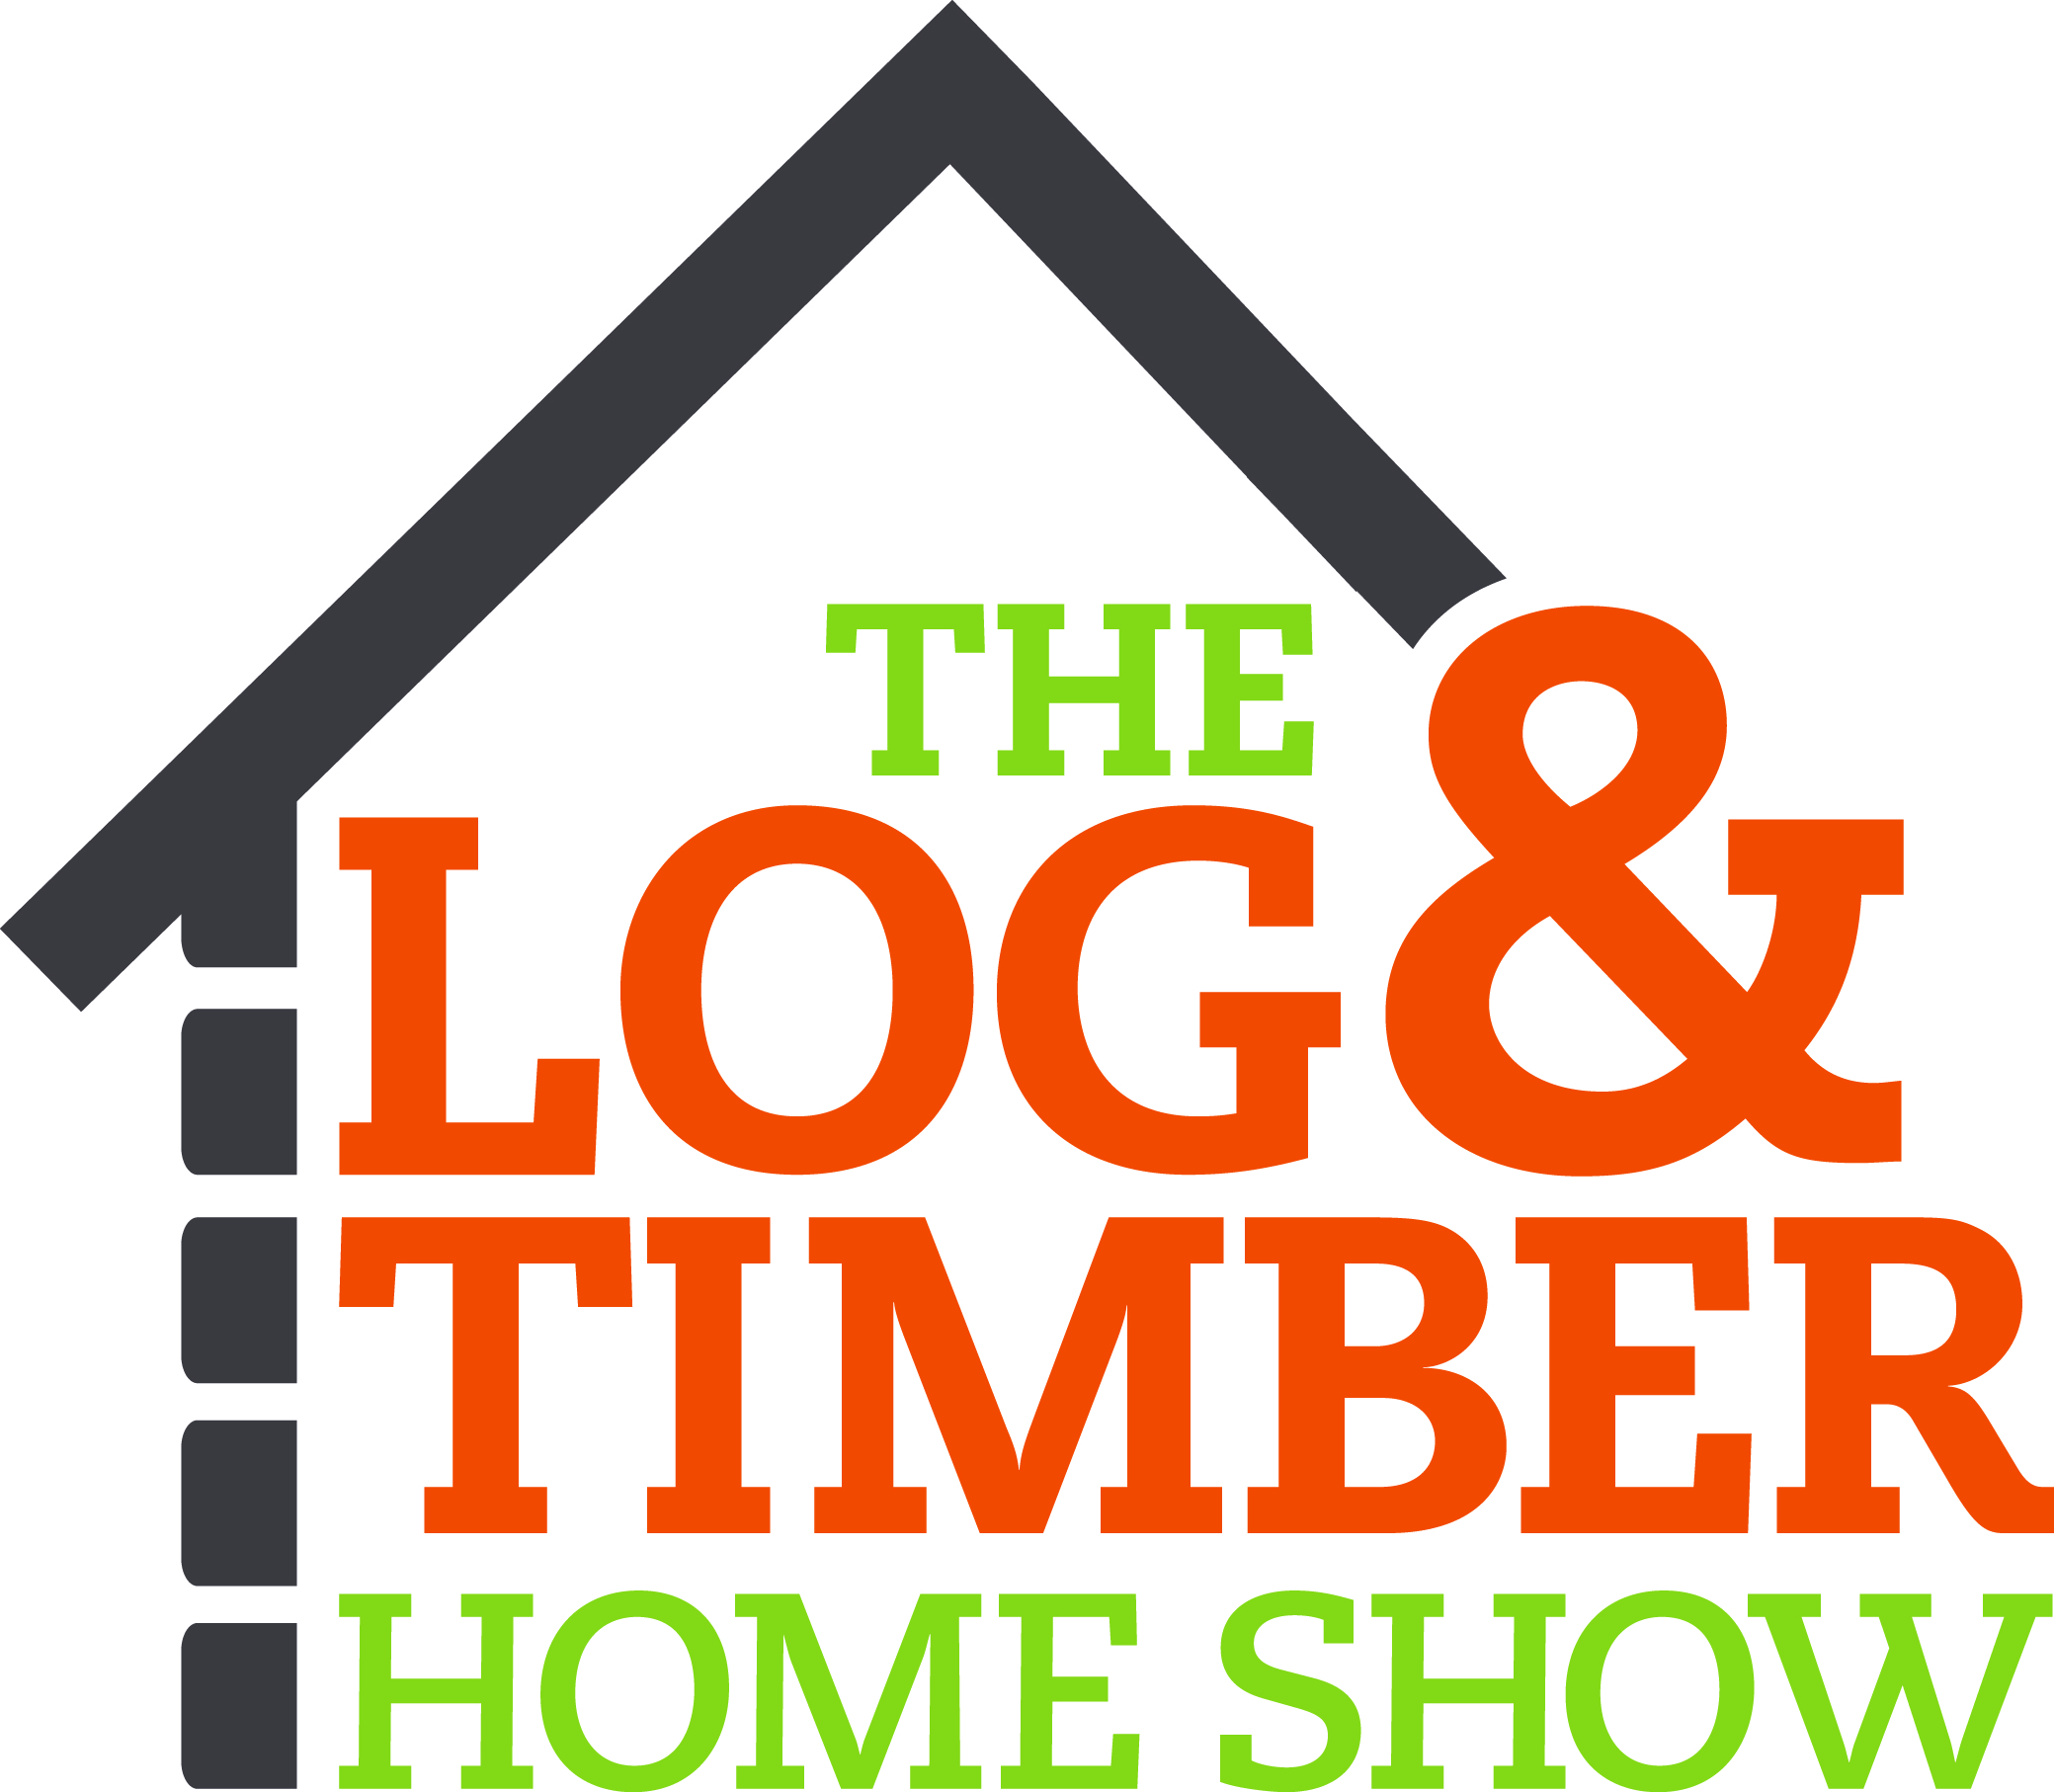 Log & Timber Home Show logo.